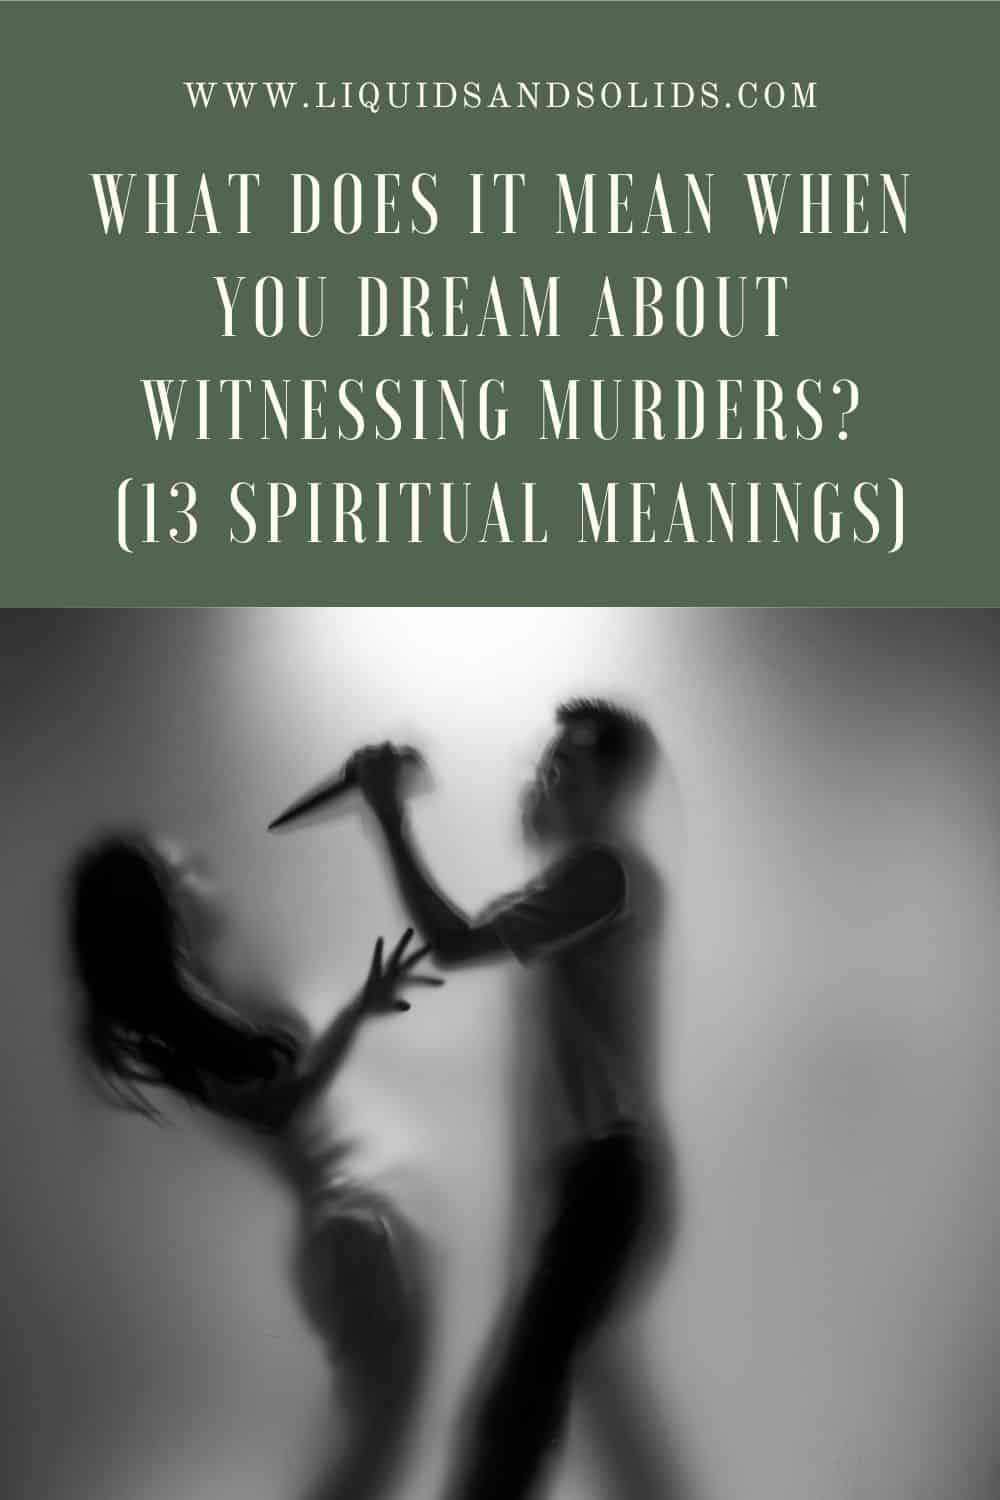  Mit jelent, ha gyilkosságok tanúja vagy álmodban? (13 spirituális jelentés)